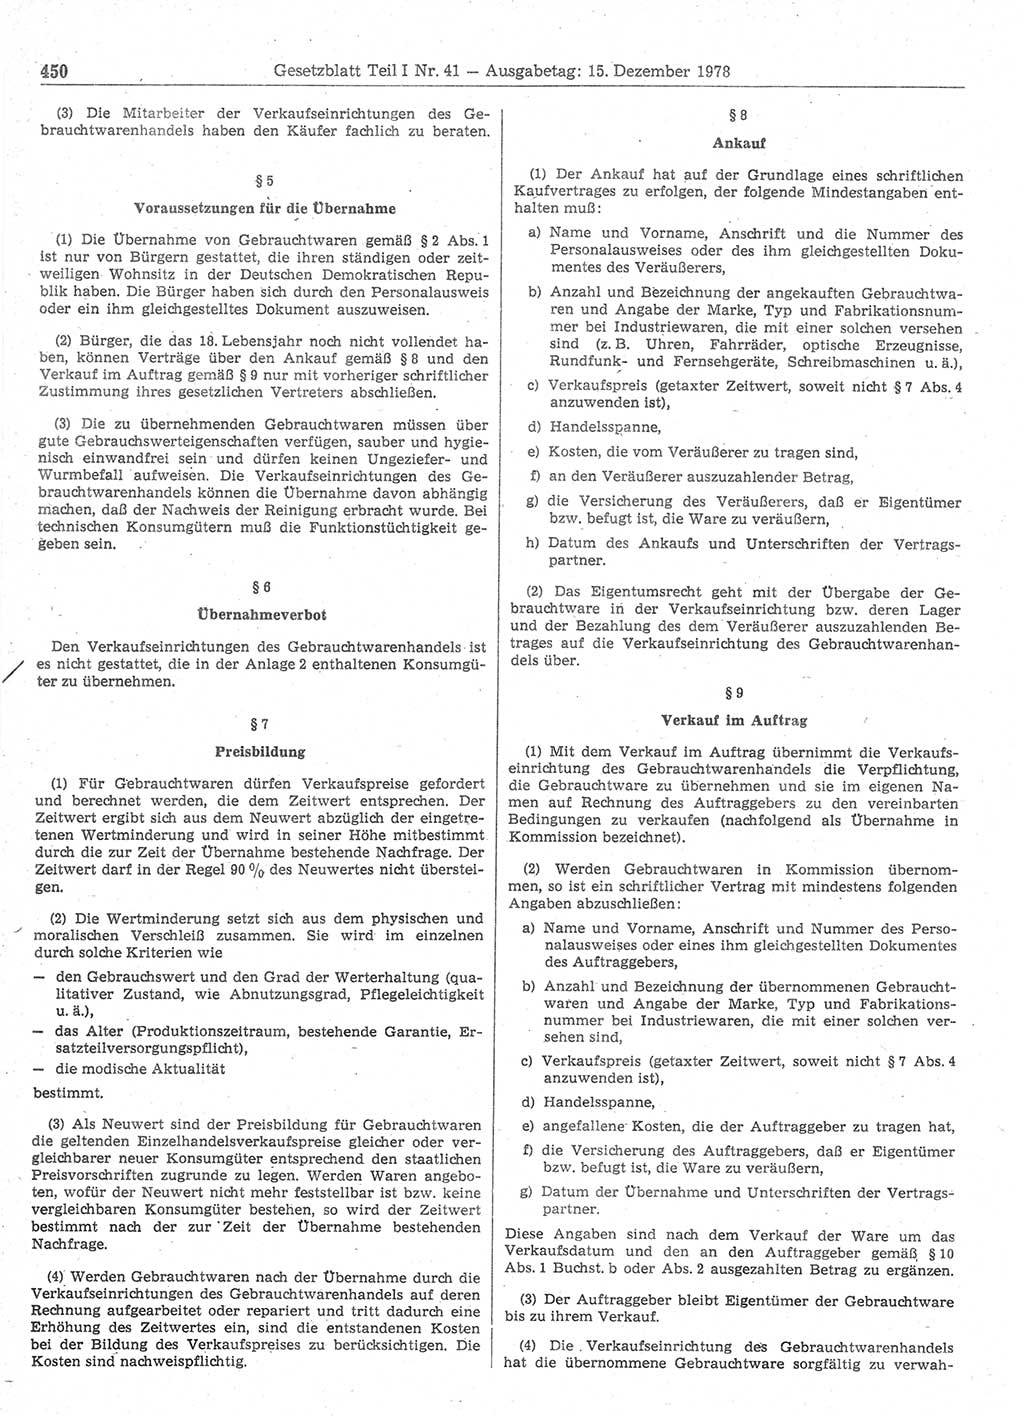 Gesetzblatt (GBl.) der Deutschen Demokratischen Republik (DDR) Teil Ⅰ 1978, Seite 450 (GBl. DDR Ⅰ 1978, S. 450)